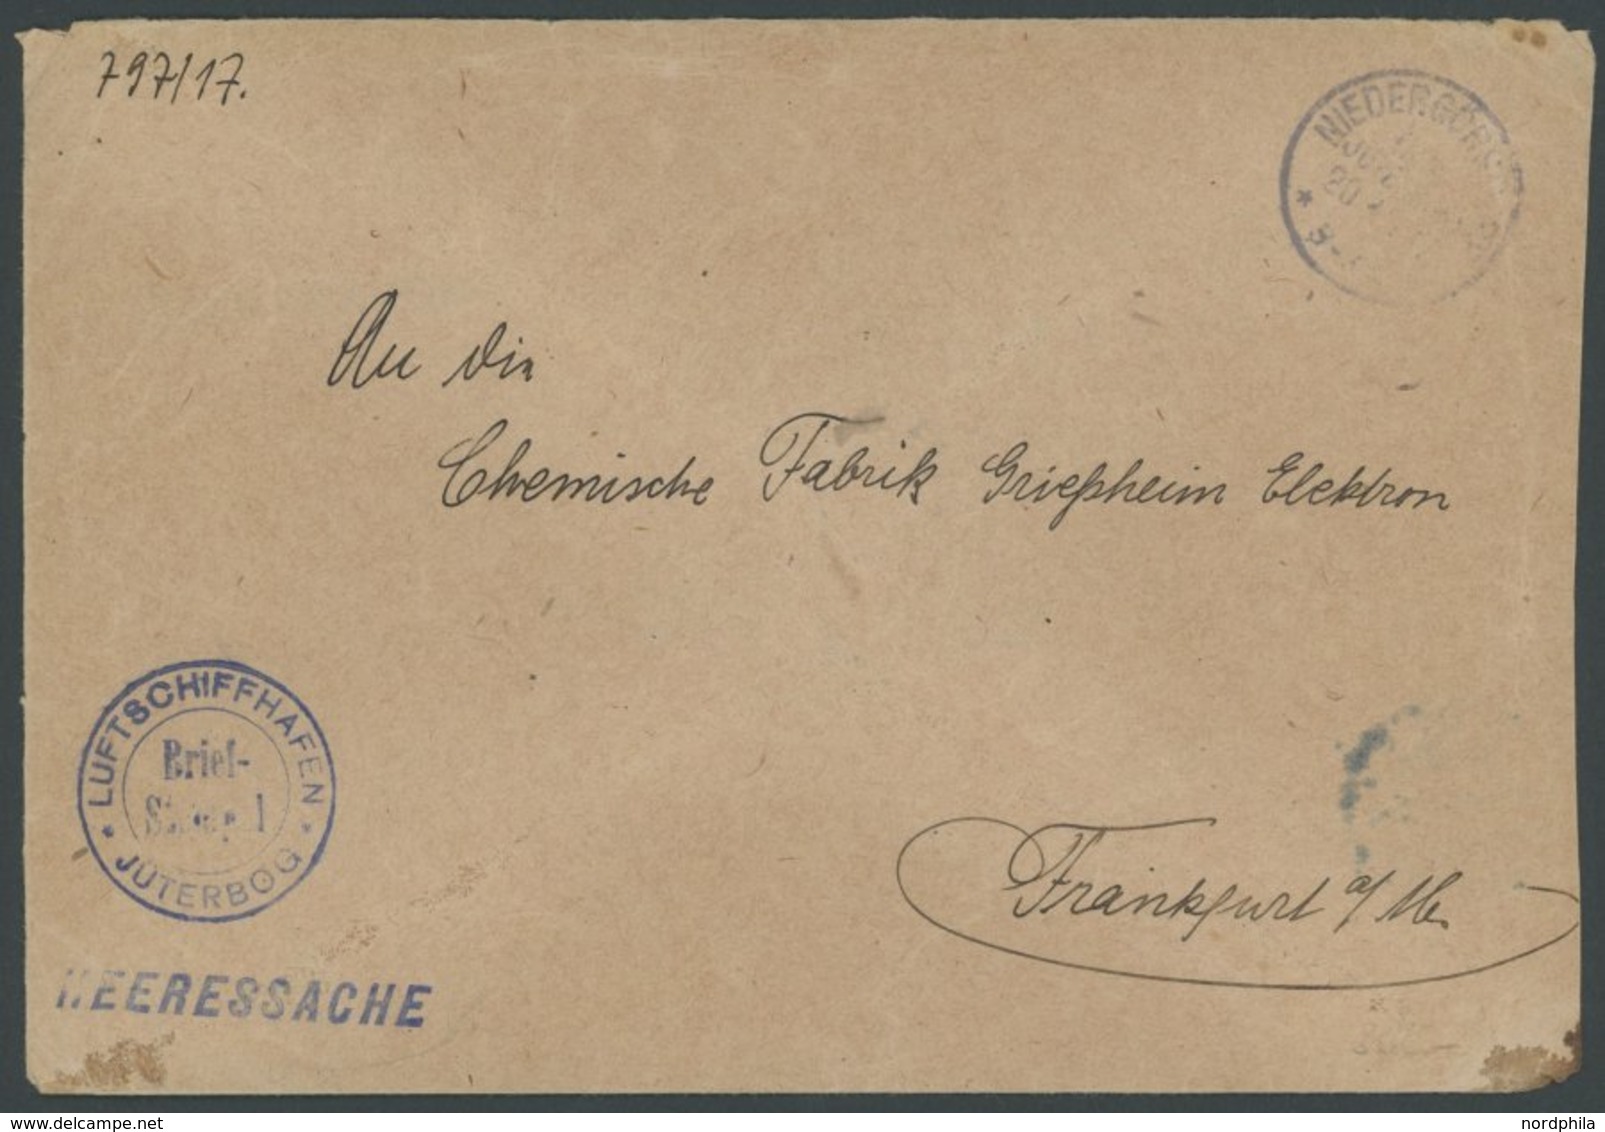 LUFTFAHRT IM I. WELTKRIEG 1916, LUFTSCHIFFHAFEN JÜTERBOG, Blauer Briefstempel Auf Heeressache, Feinst - Aviones